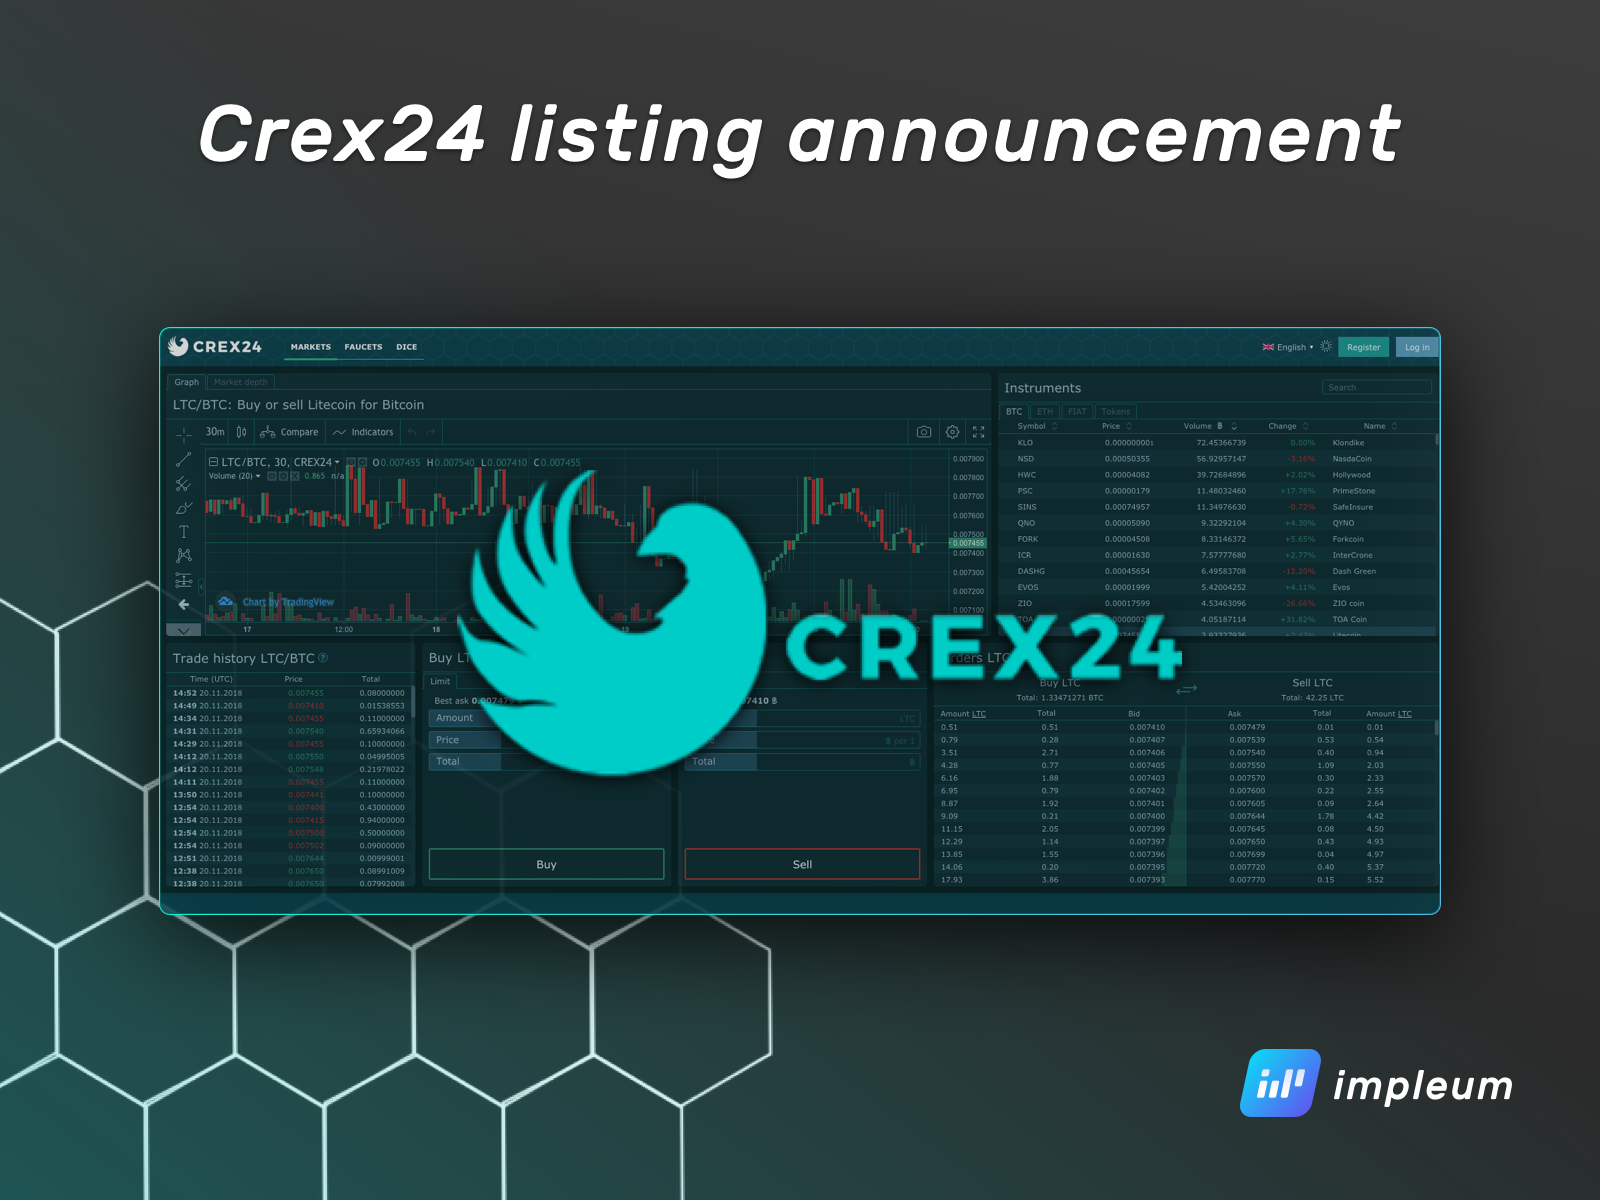 Crex24 listing announcement - Impleum